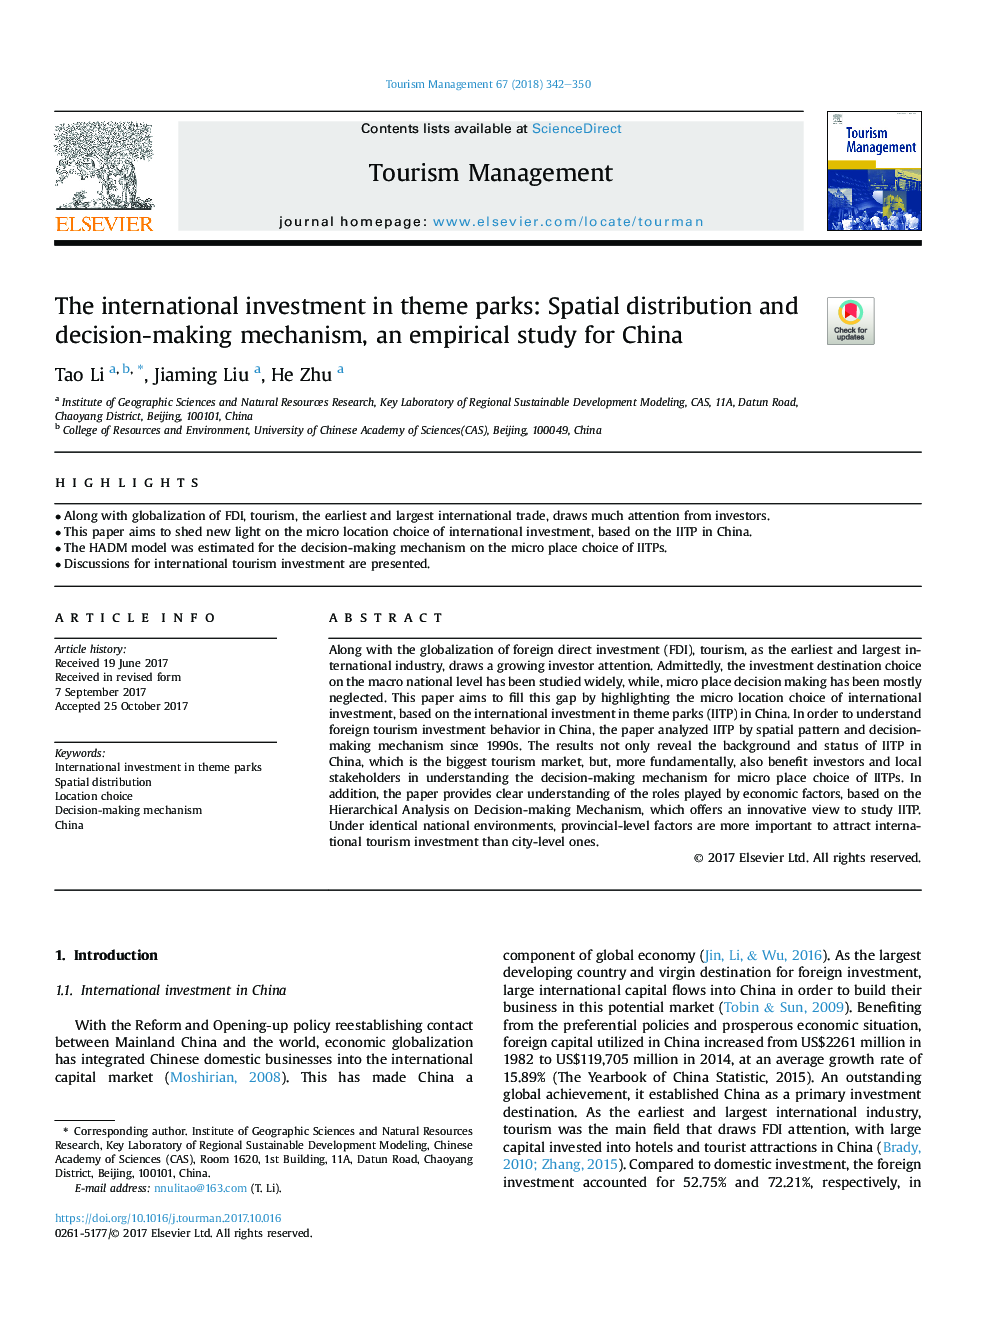 سرمایه گذاری بین المللی در پارک های تمیز: توزیع فضایی و مکانیزم تصمیم گیری، مطالعه تجربی برای چین است 